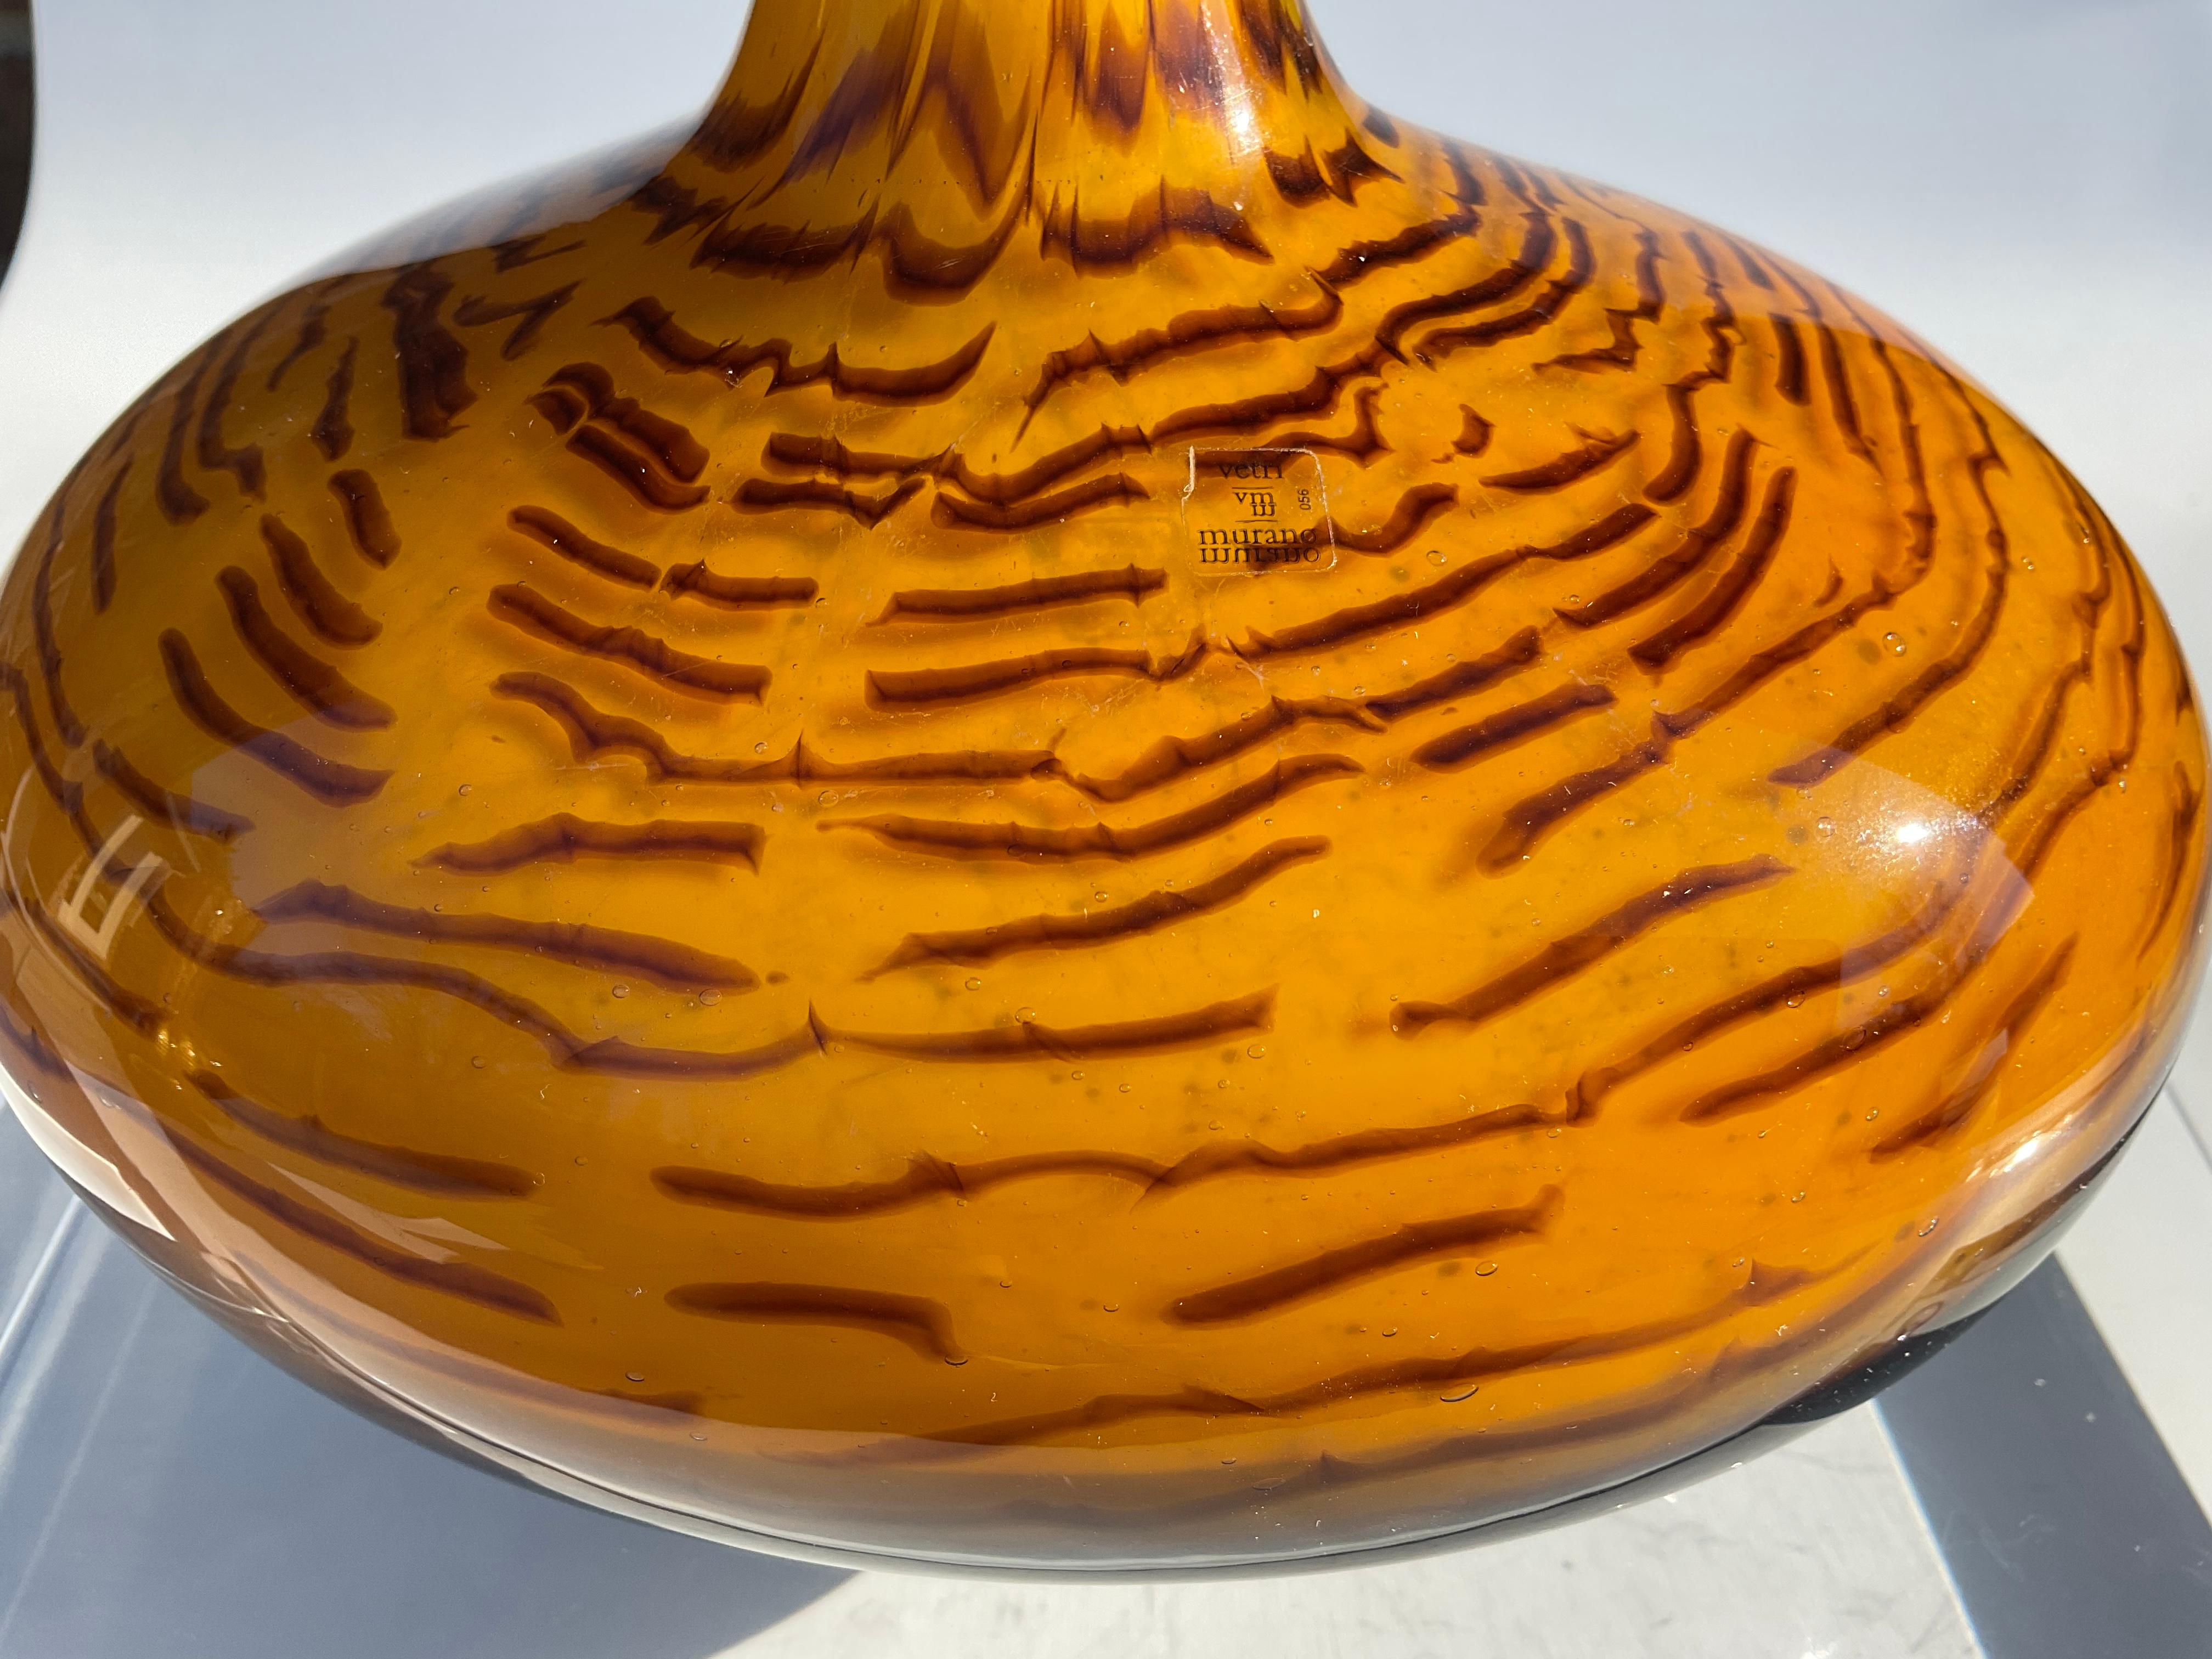 Antonio da Ros Cenedese Fossili Incalmo Murano glass vase in black and amber glass decorated with orange cane segments.